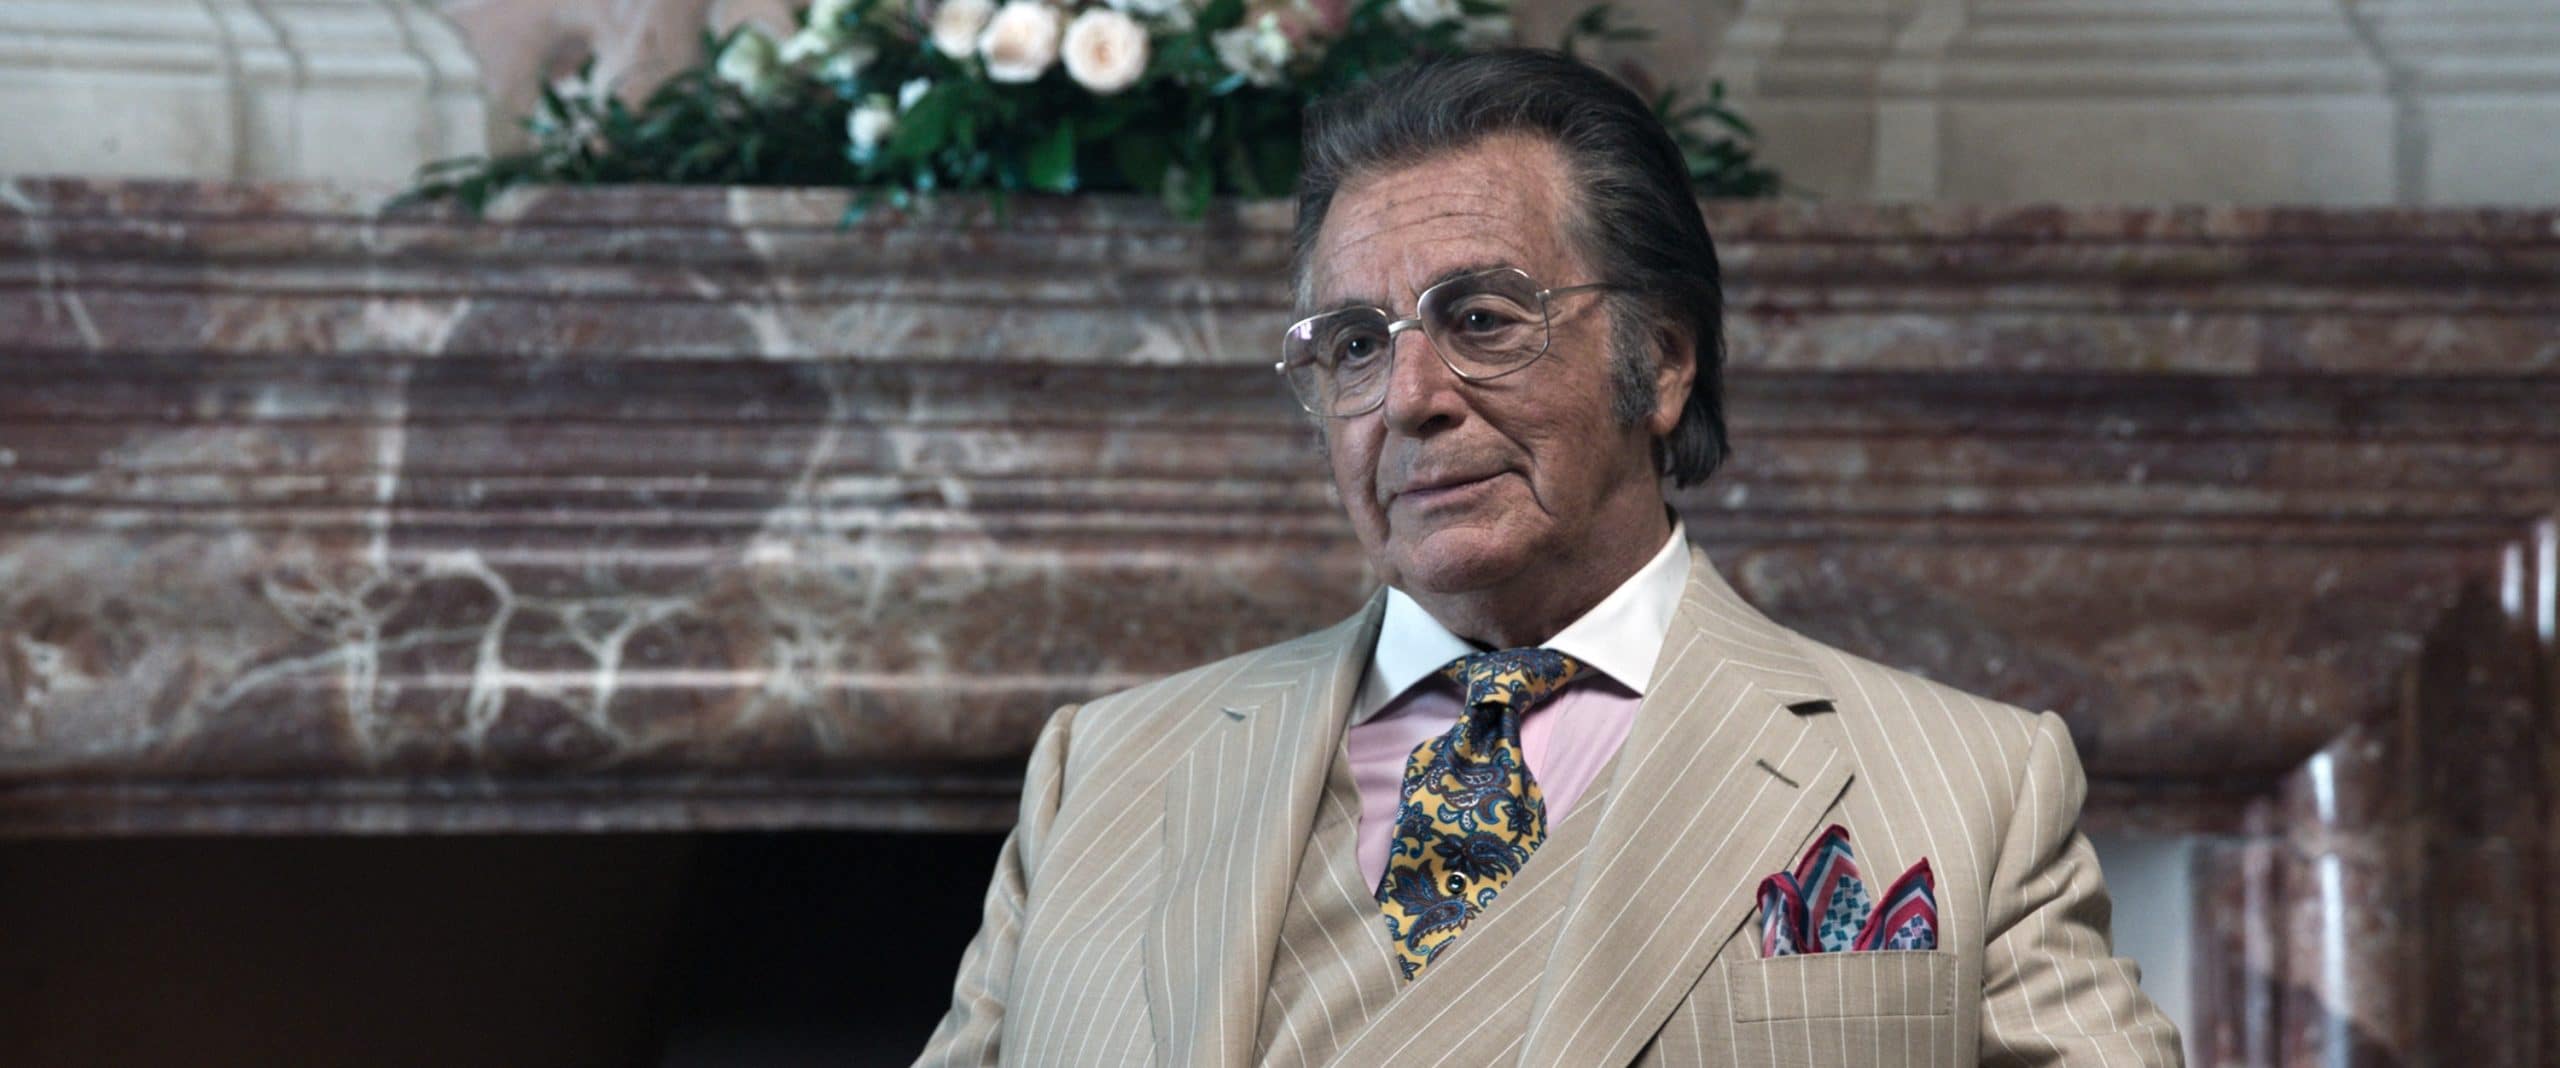 HOUSE OF GUCCI, Al Pacino as Aldo Gucci, 2021